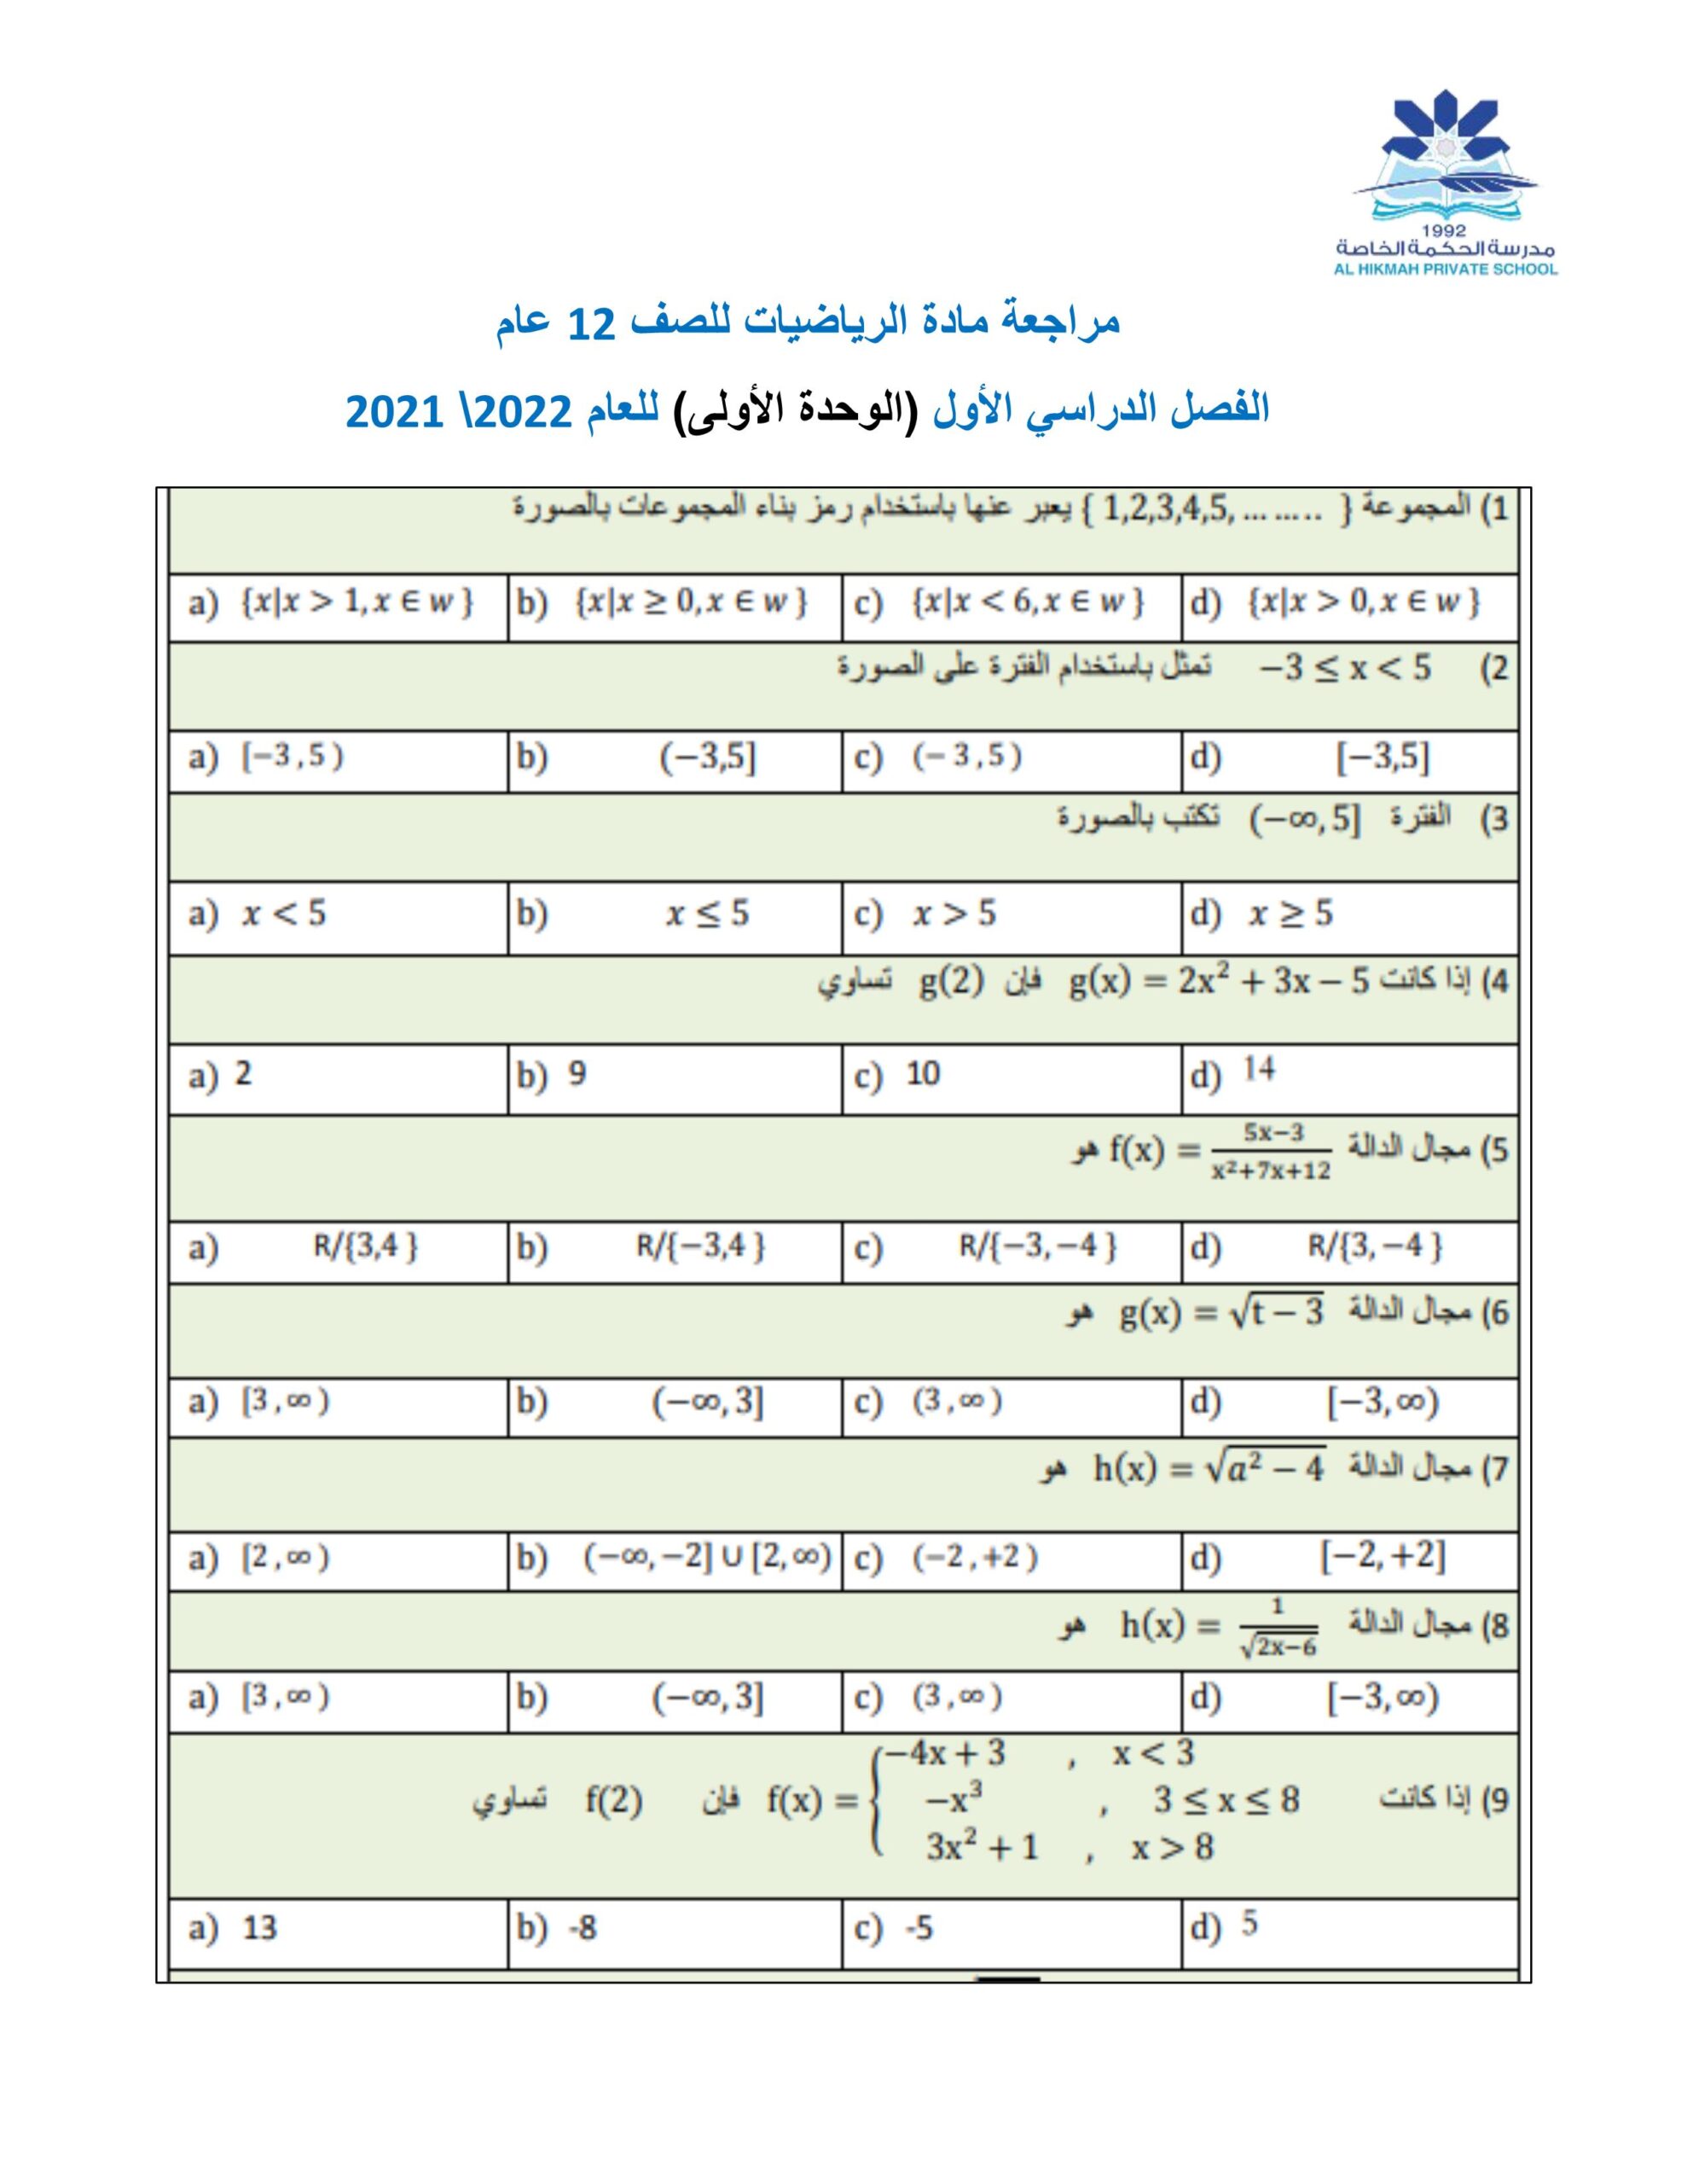 أوراق عمل الوحدة الأولى الرياضيات المتكاملة الصف الثاني عشر عام 